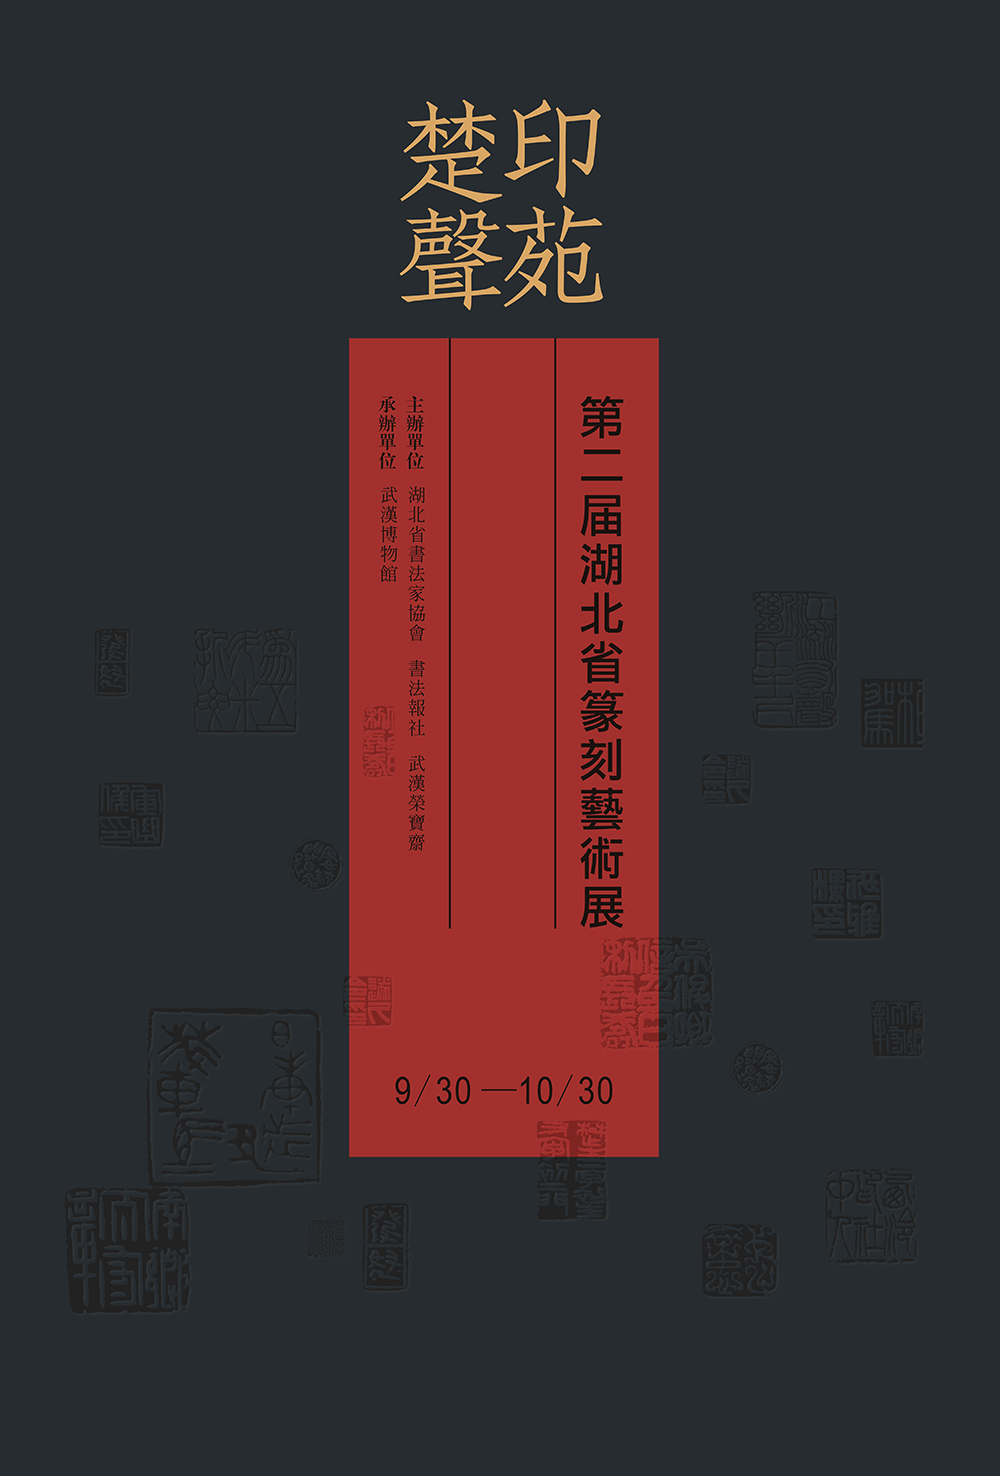 印苑楚声·第二届湖北省篆刻艺术展